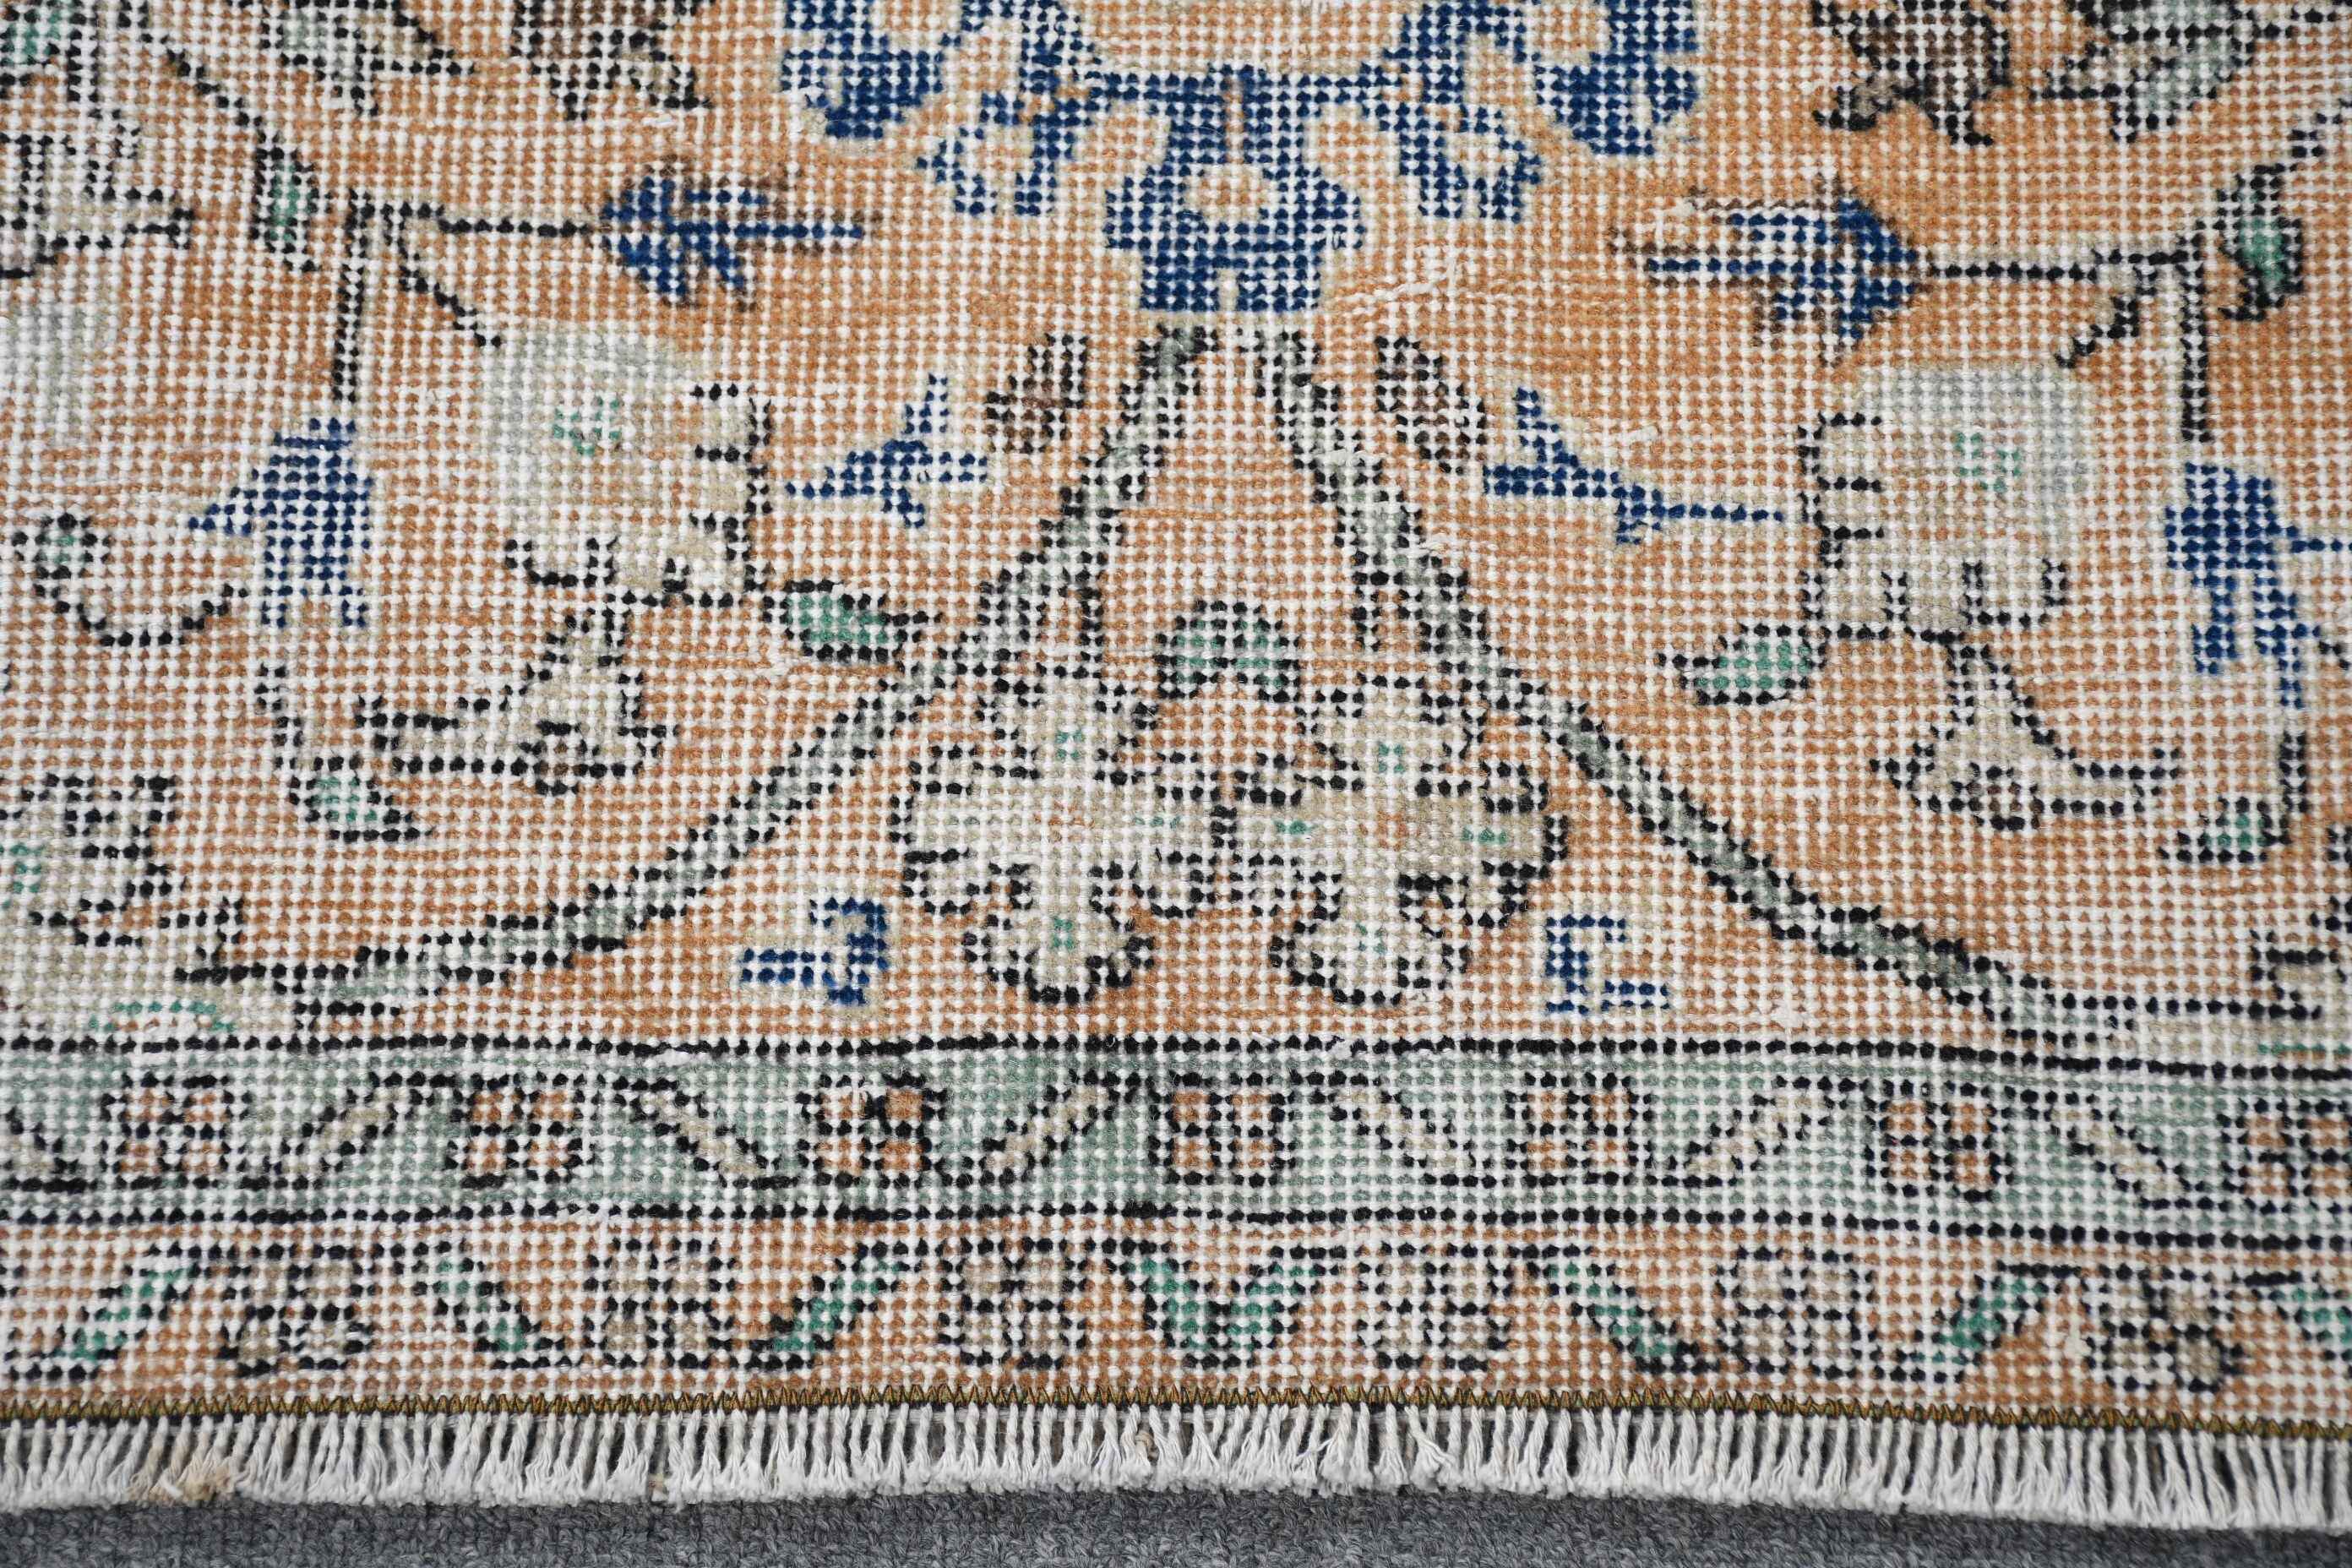 Rugs for Bedroom, Turkish Rugs, Moroccan Rugs, 4.9x8.4 ft Large Rugs, Vintage Rug, Orange Bedroom Rug, Kitchen Rugs, Living Room Rug